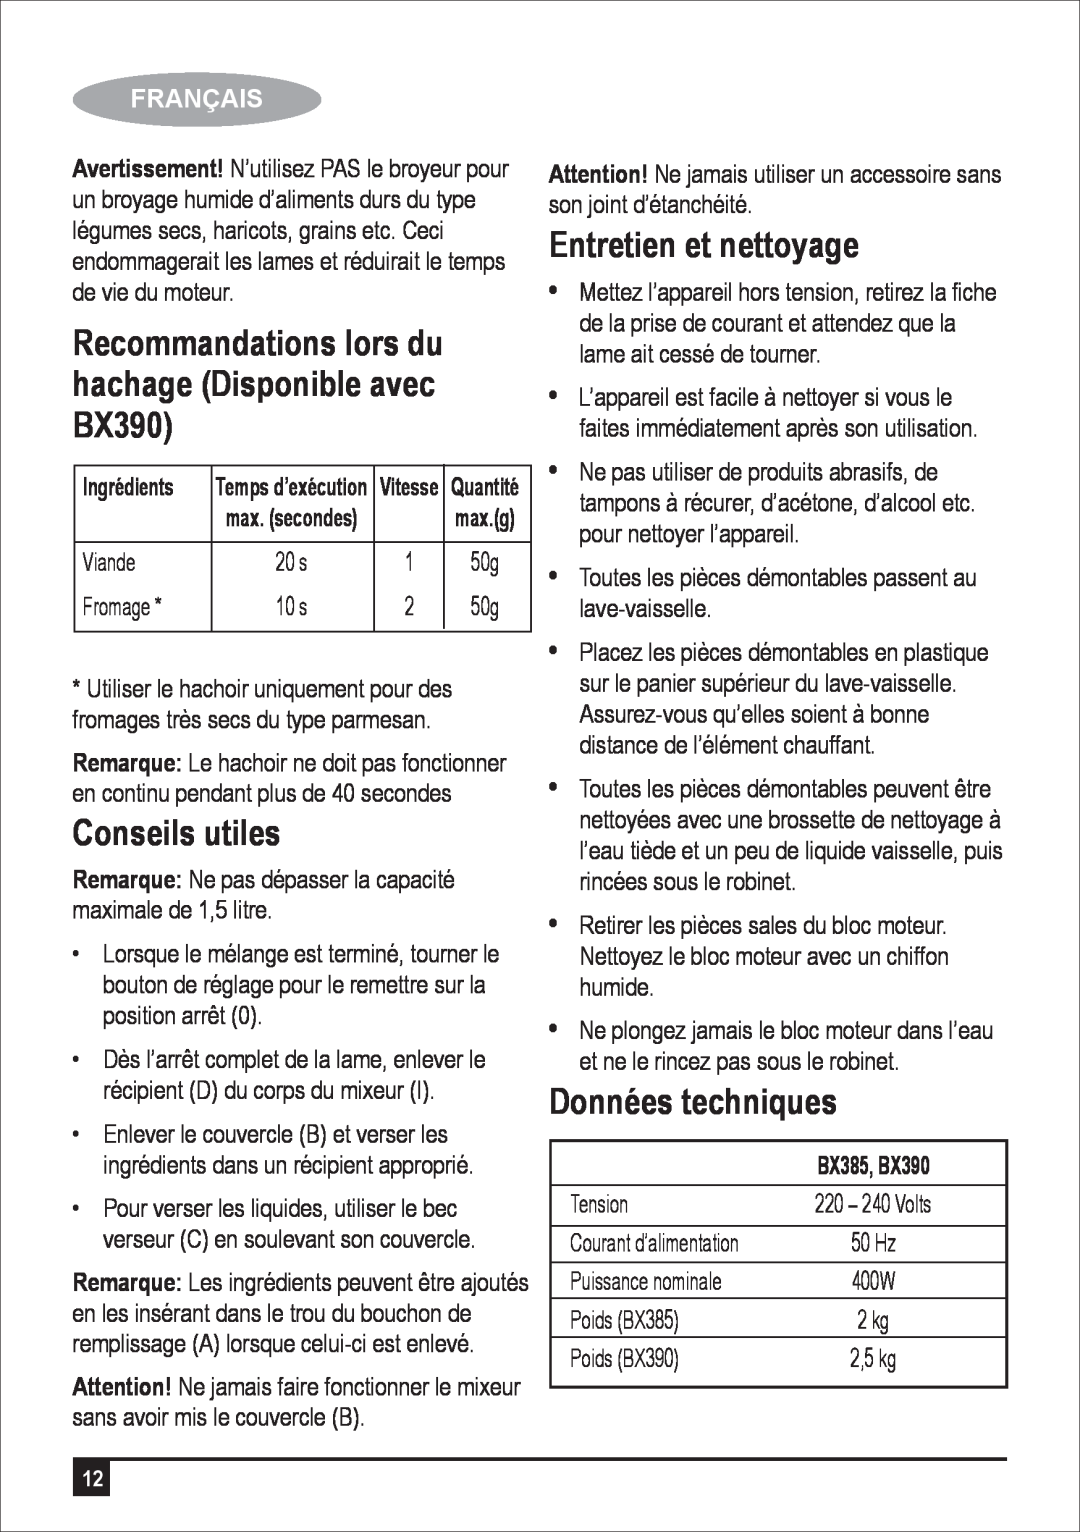 Black & Decker manual Conseils utiles, Entretien et nettoyage, Données techniques, Français, Ingrédients, BX385, BX390 